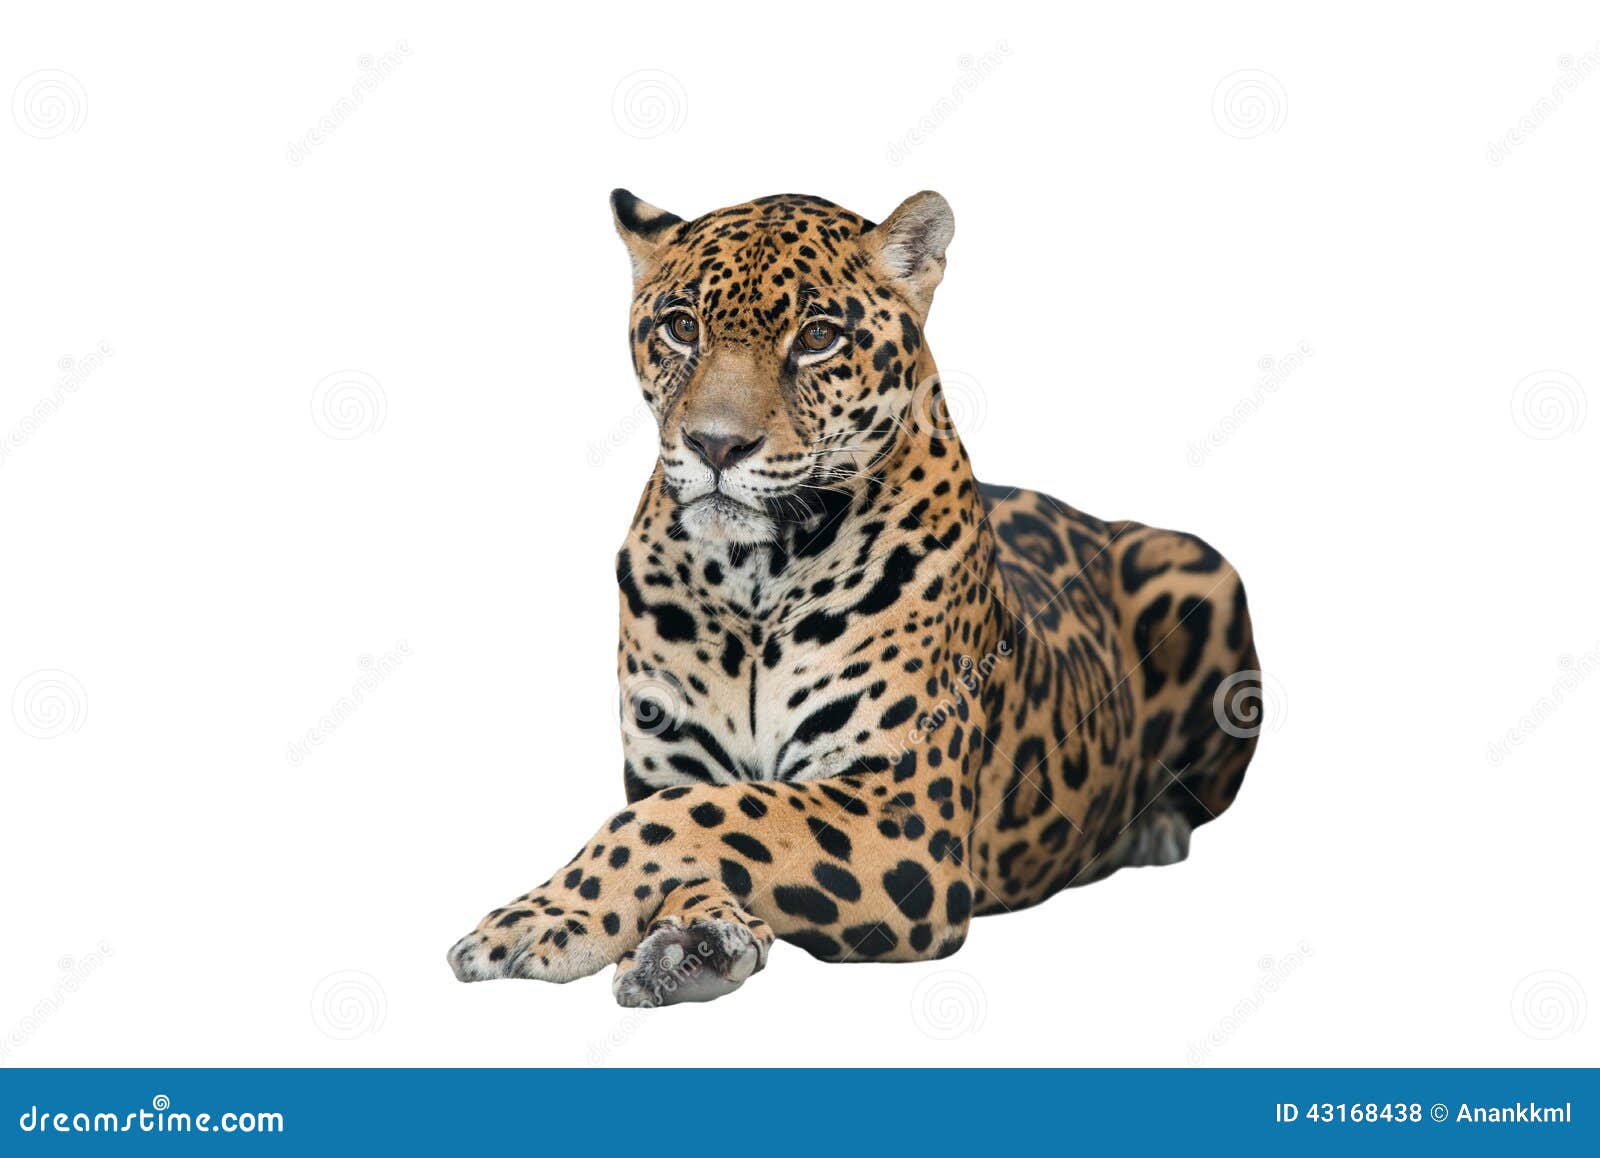 jaguar ( panthera onca ) 